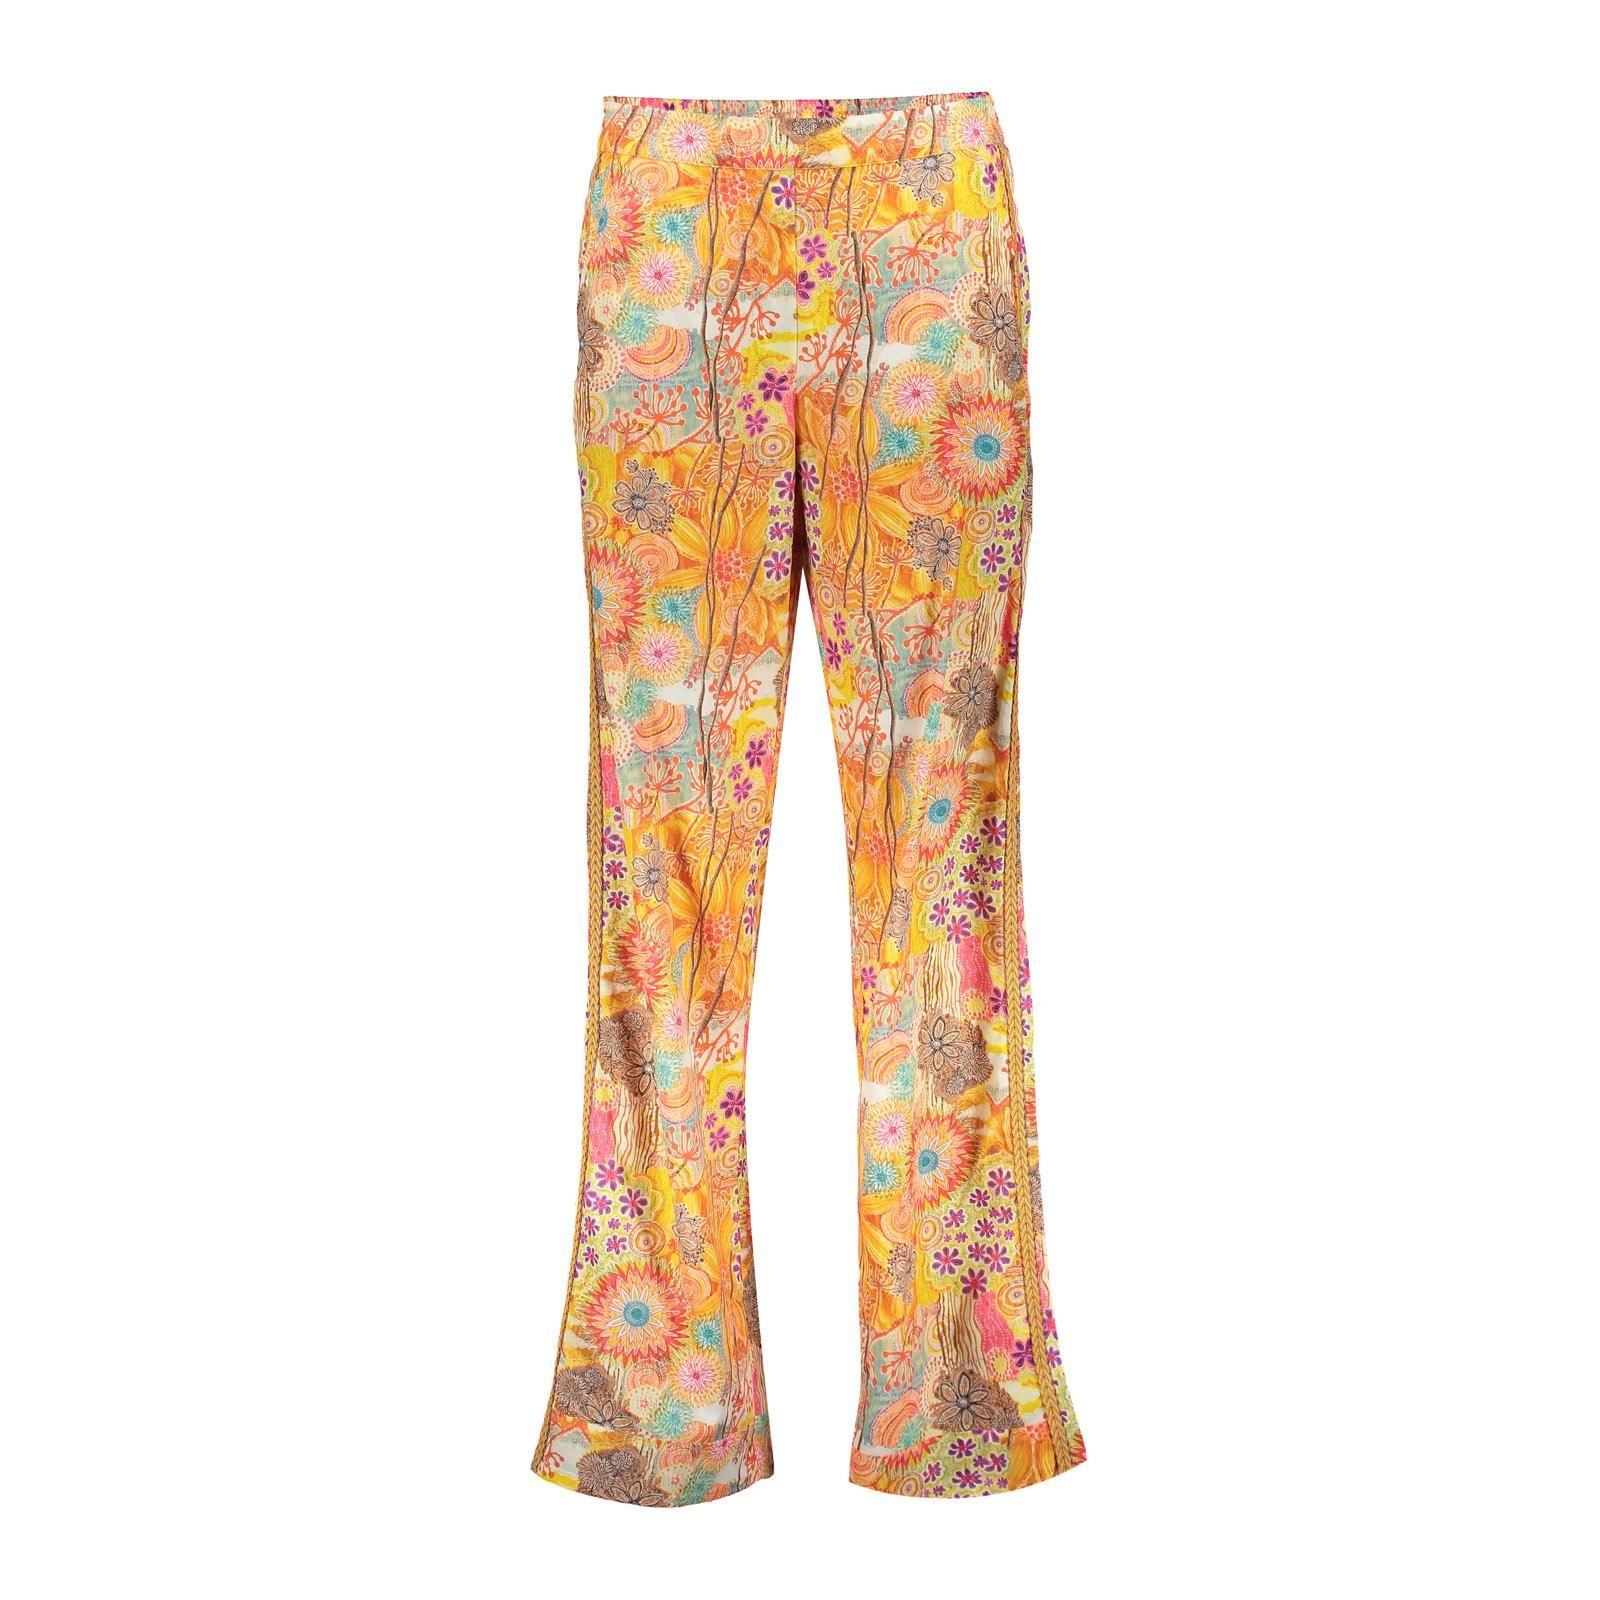 geisha Pants multicolor flowers 250 orange/pink multi 2900139527073